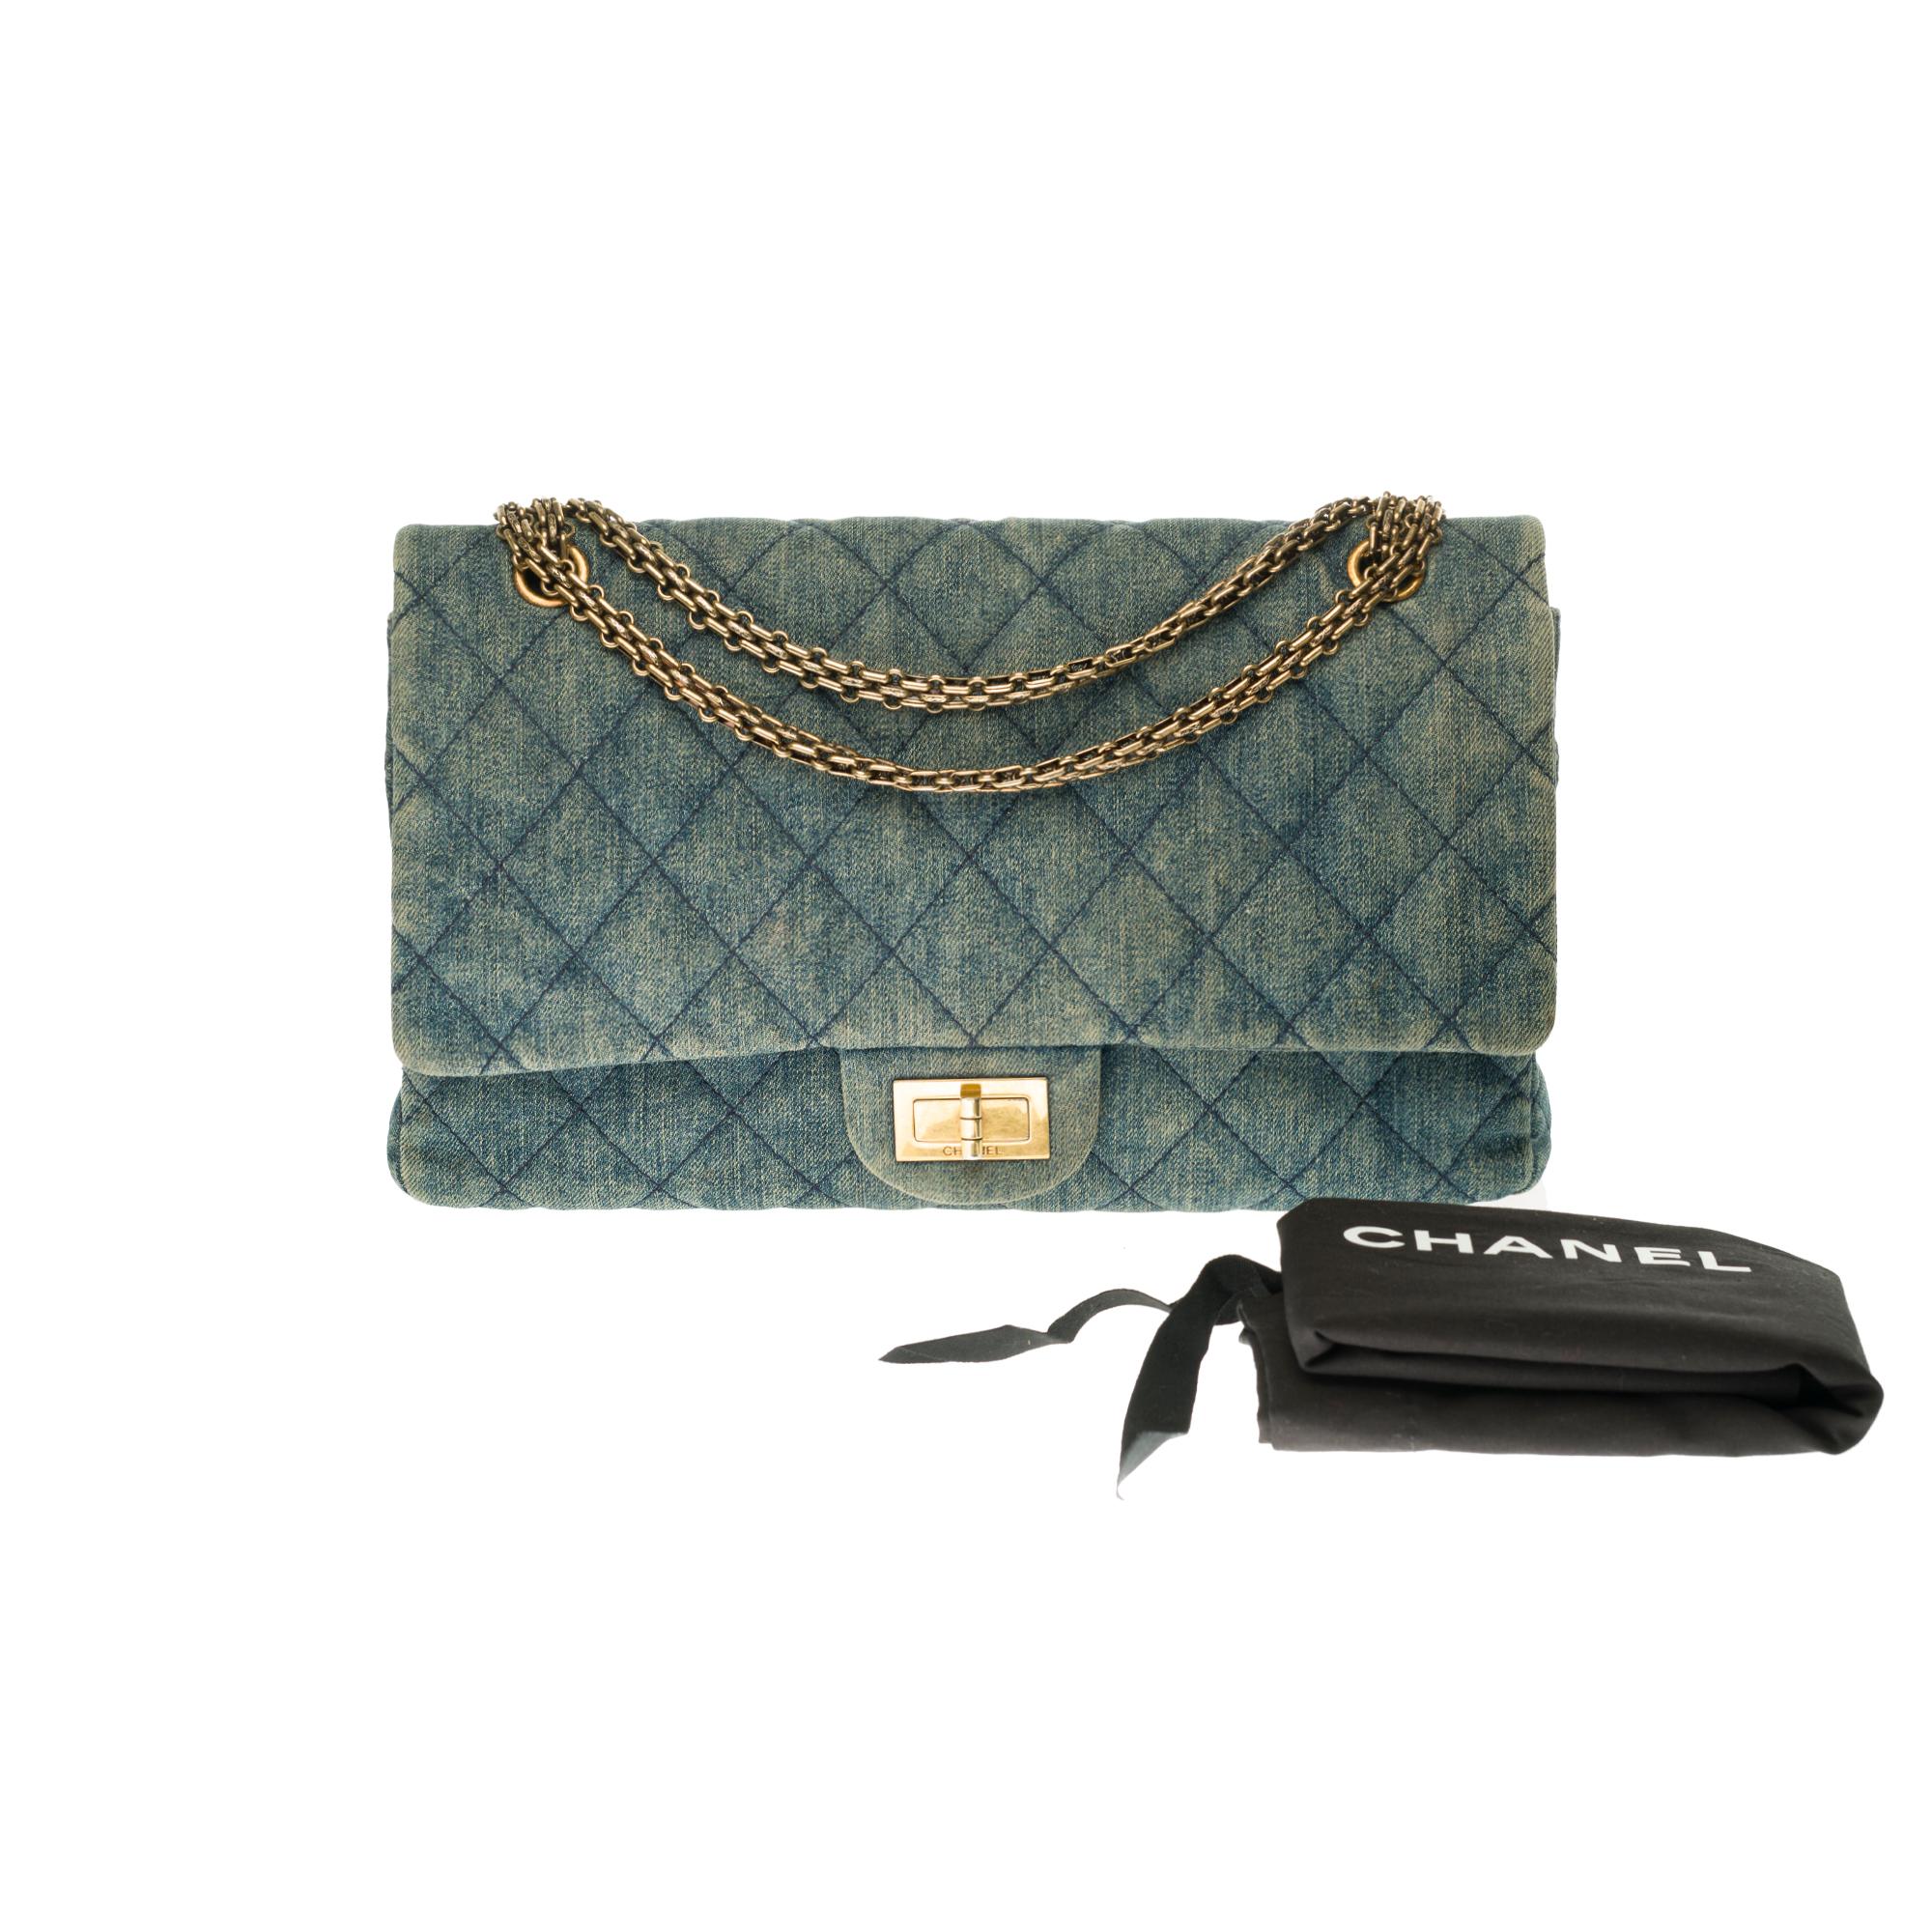 Chanel 2.55 Reissue 227 handbag in blue quilted denim with bronze hardware 3